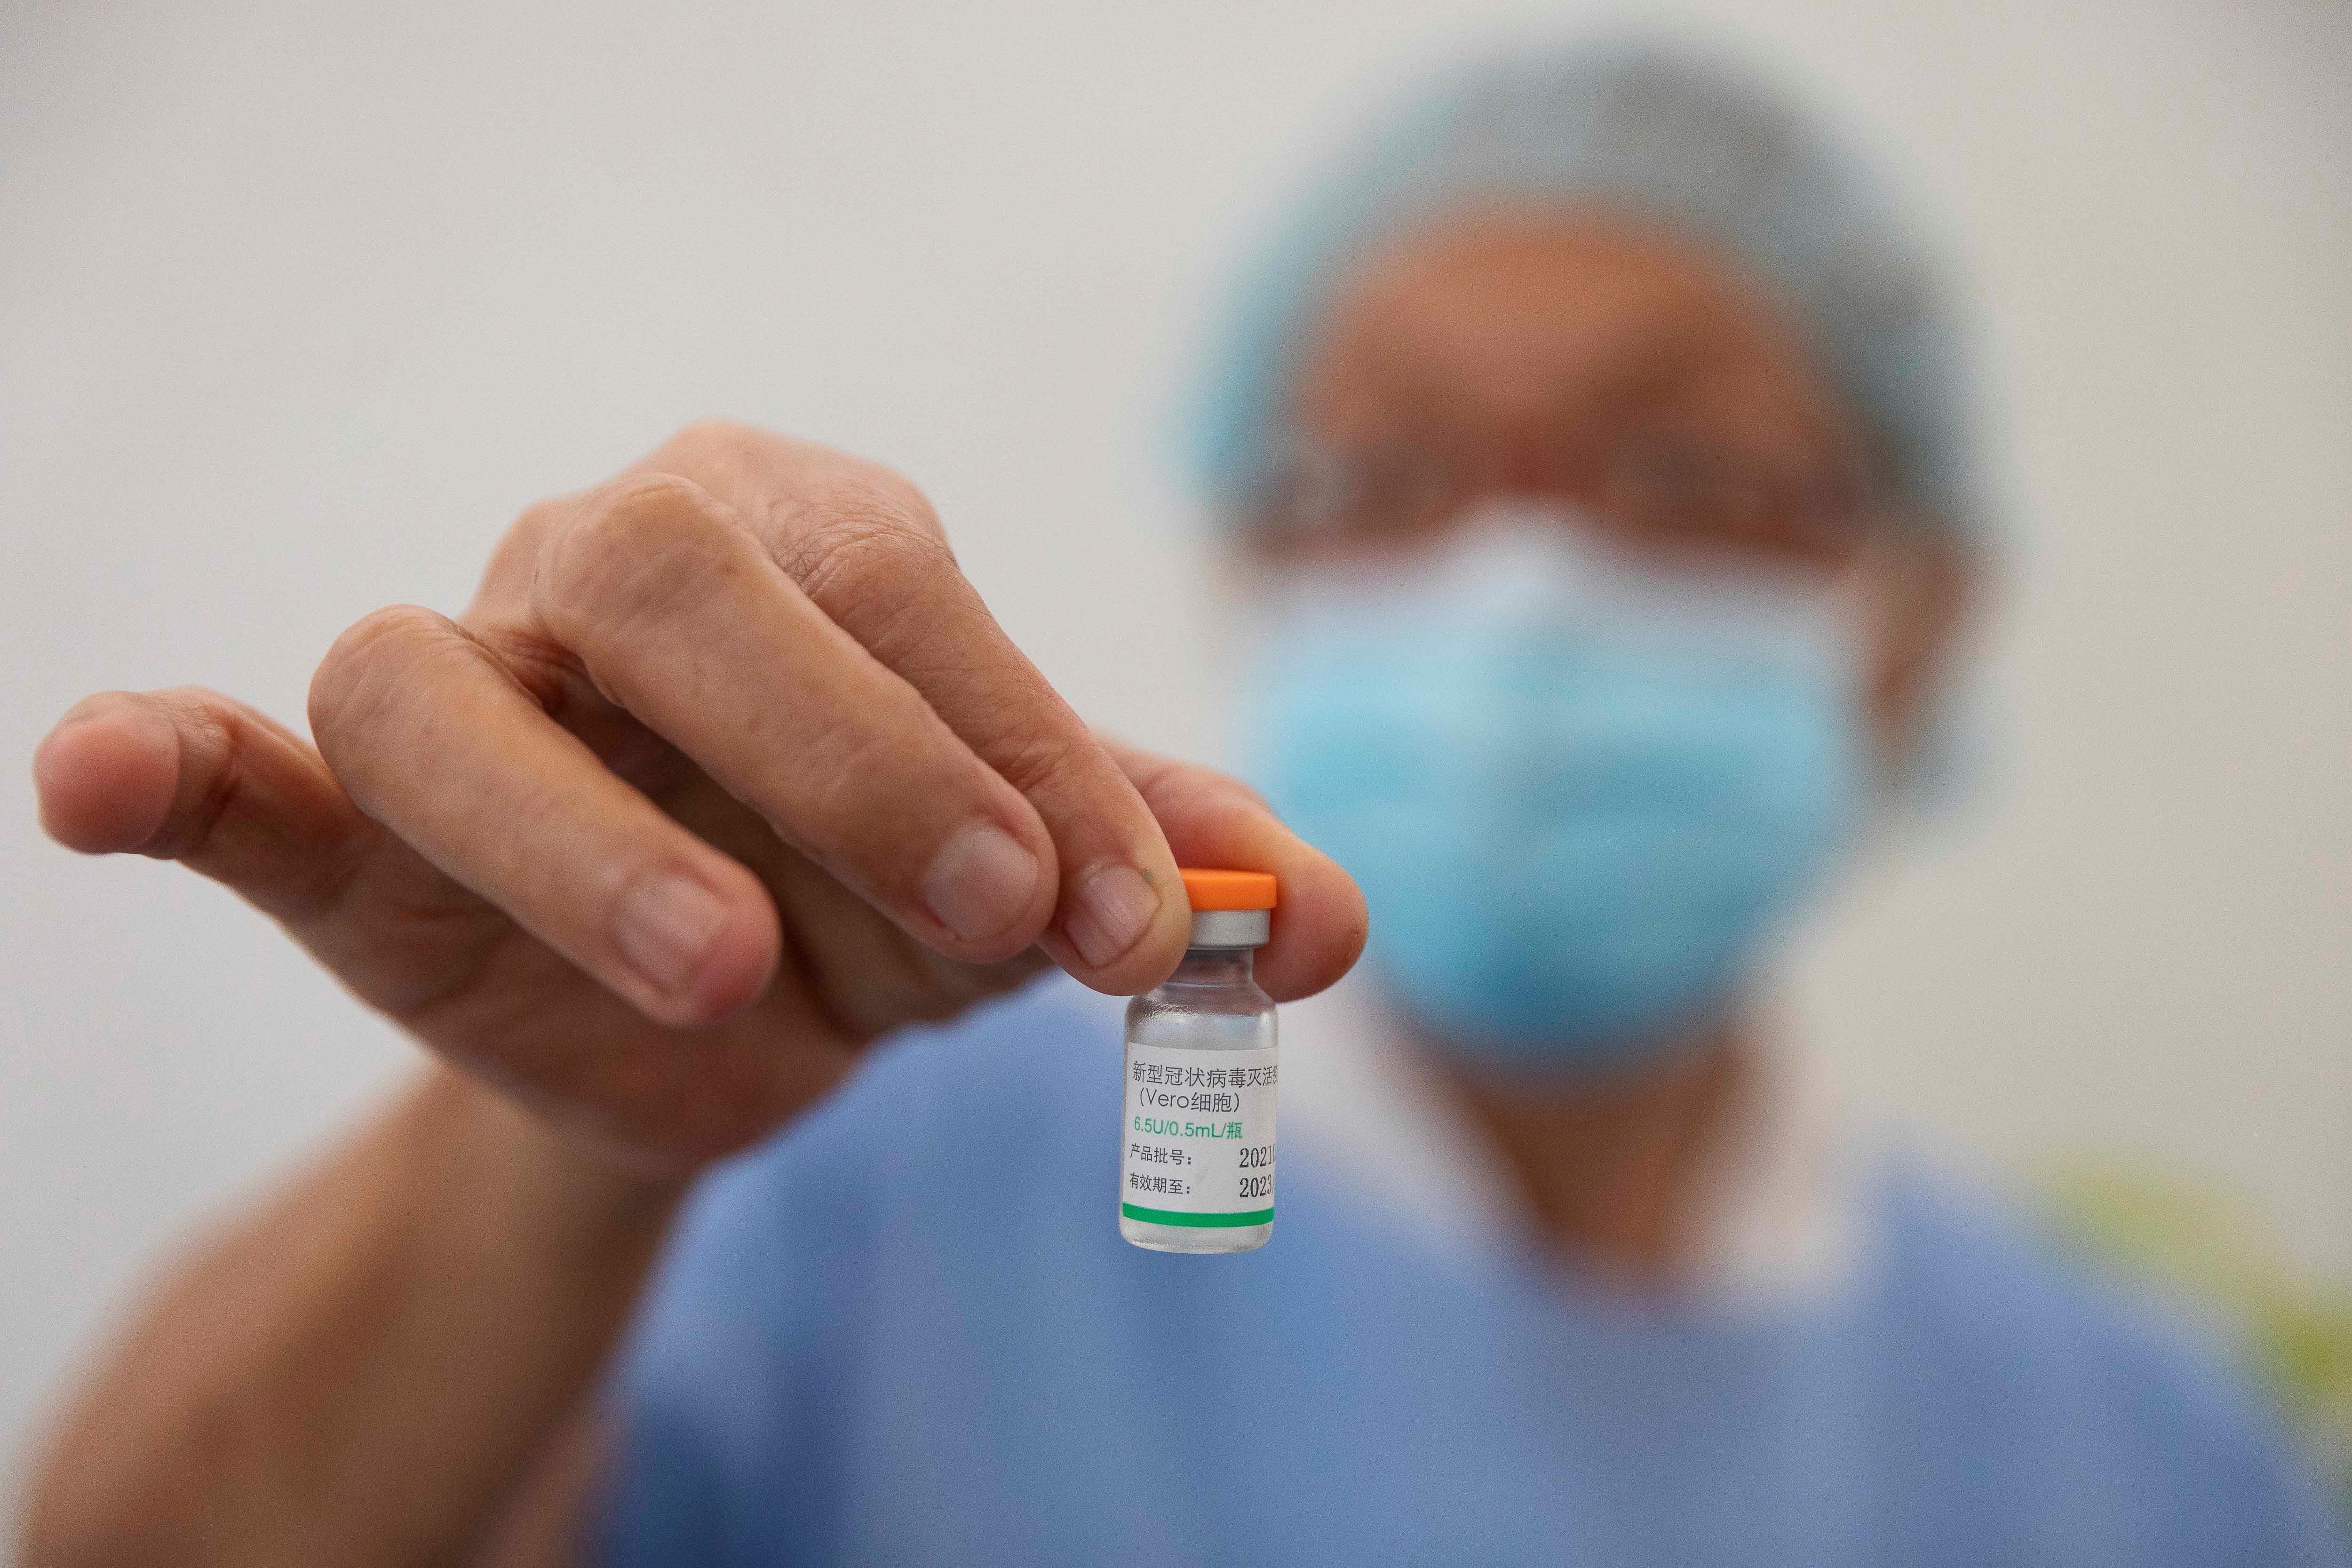 España no dejará entrar a viajeros con tarjetas de vacunación que solo digan “Vero Cell”